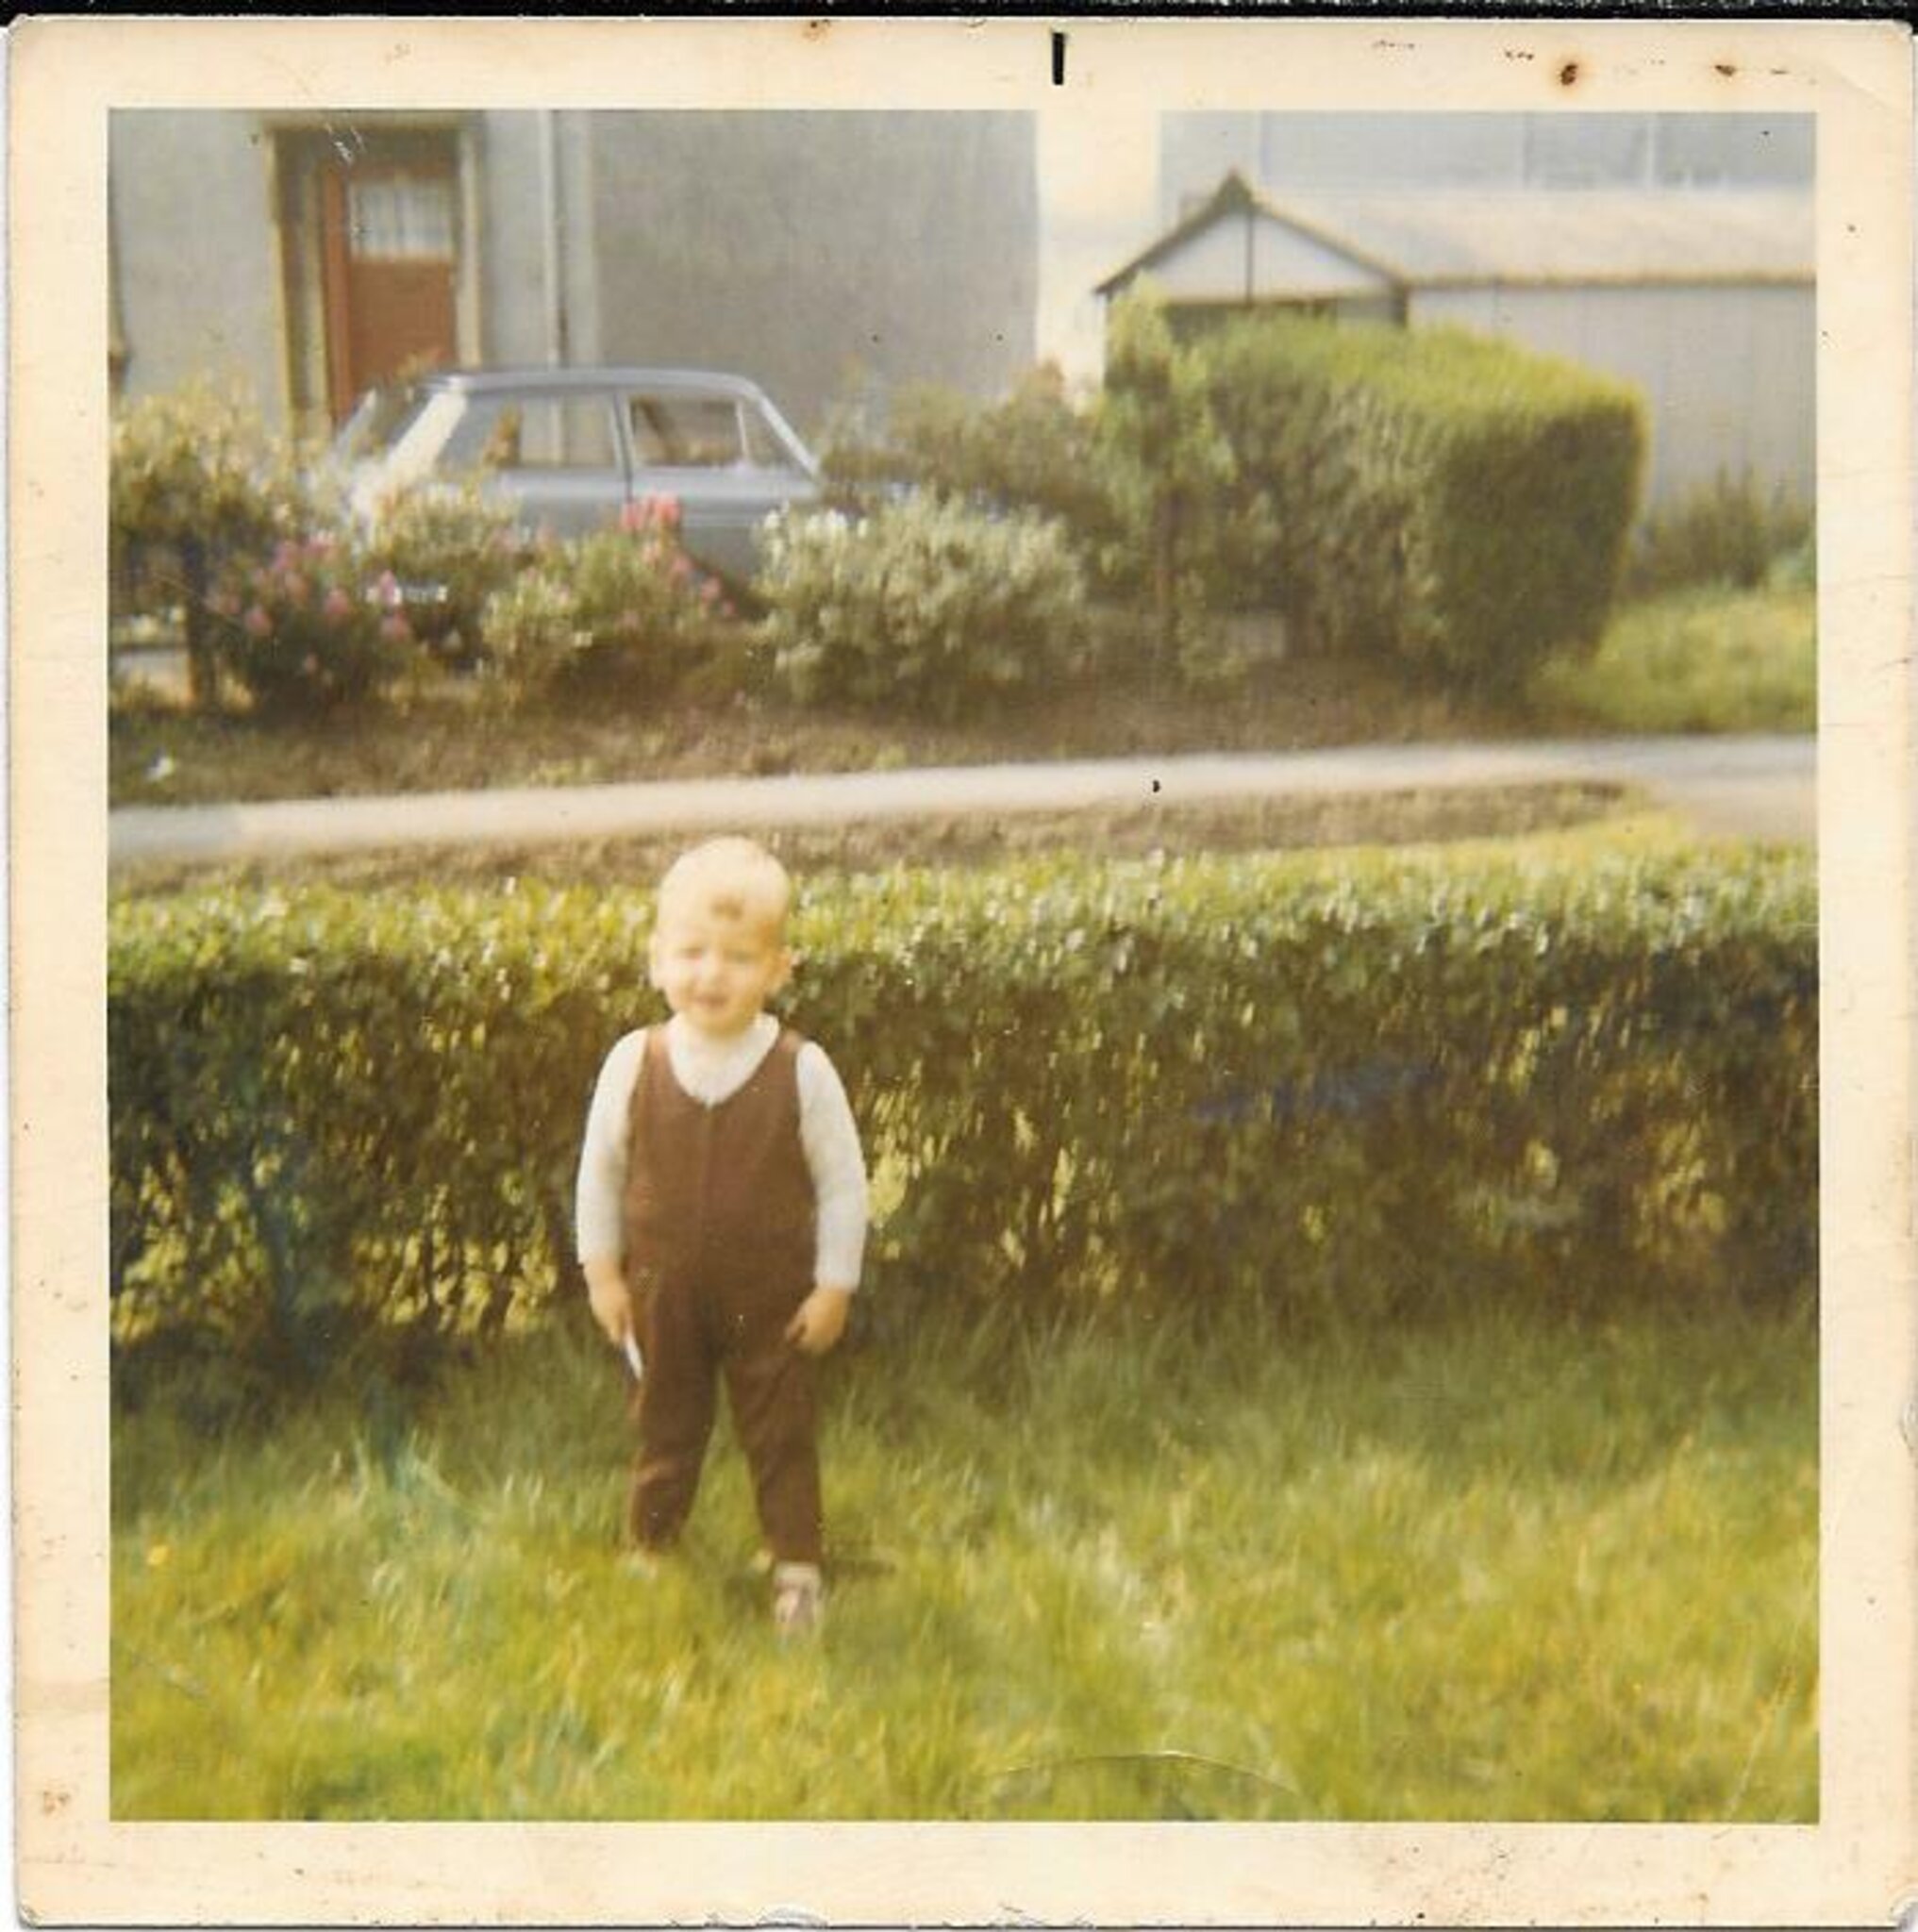 A colour photo of a toddler standing in a garden